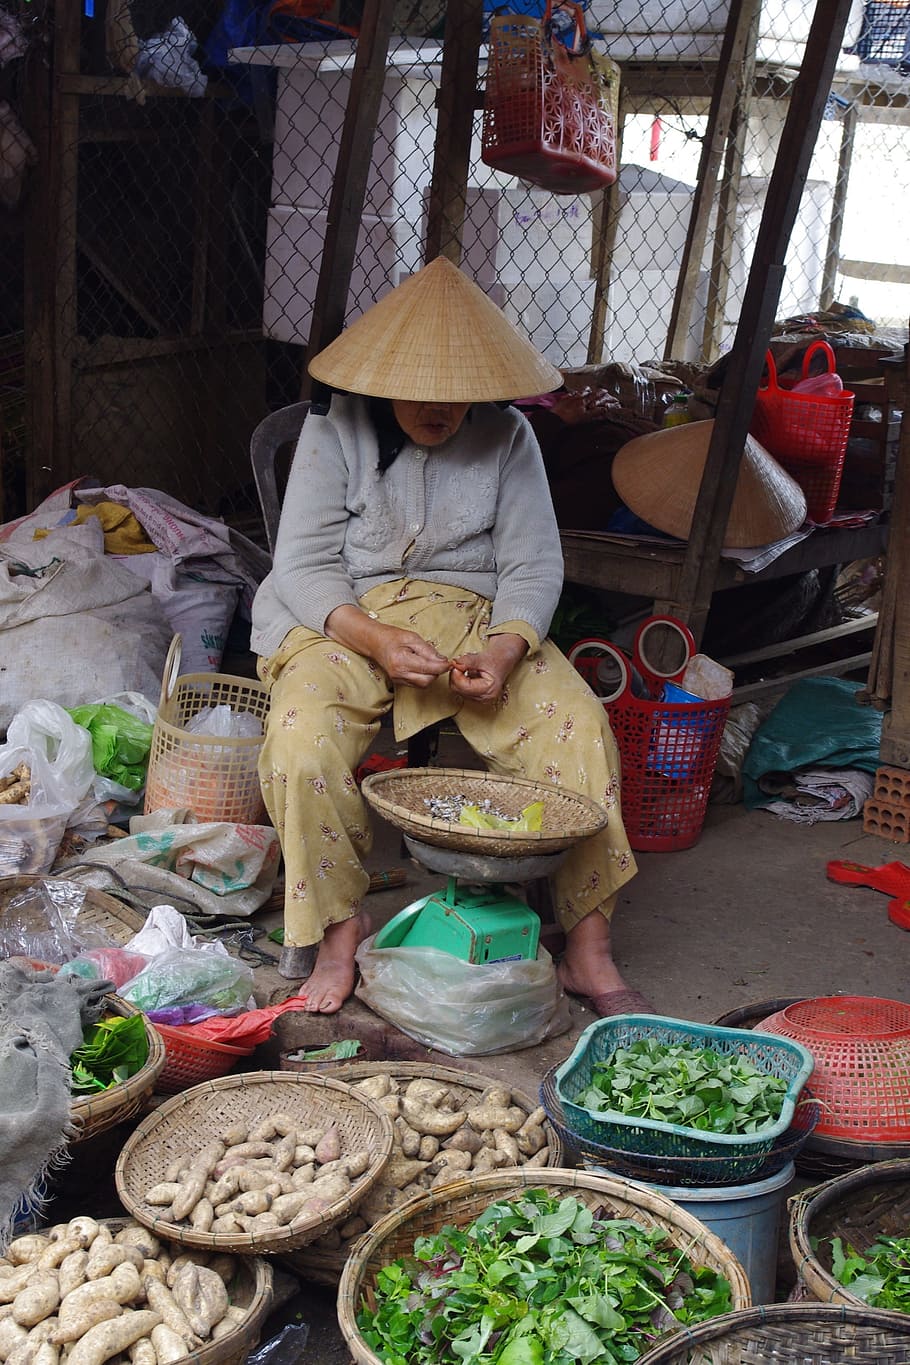 Vendor, Vegetables, Market, Seller, leafy, tubers, basket, woman, hoi an, vietnam